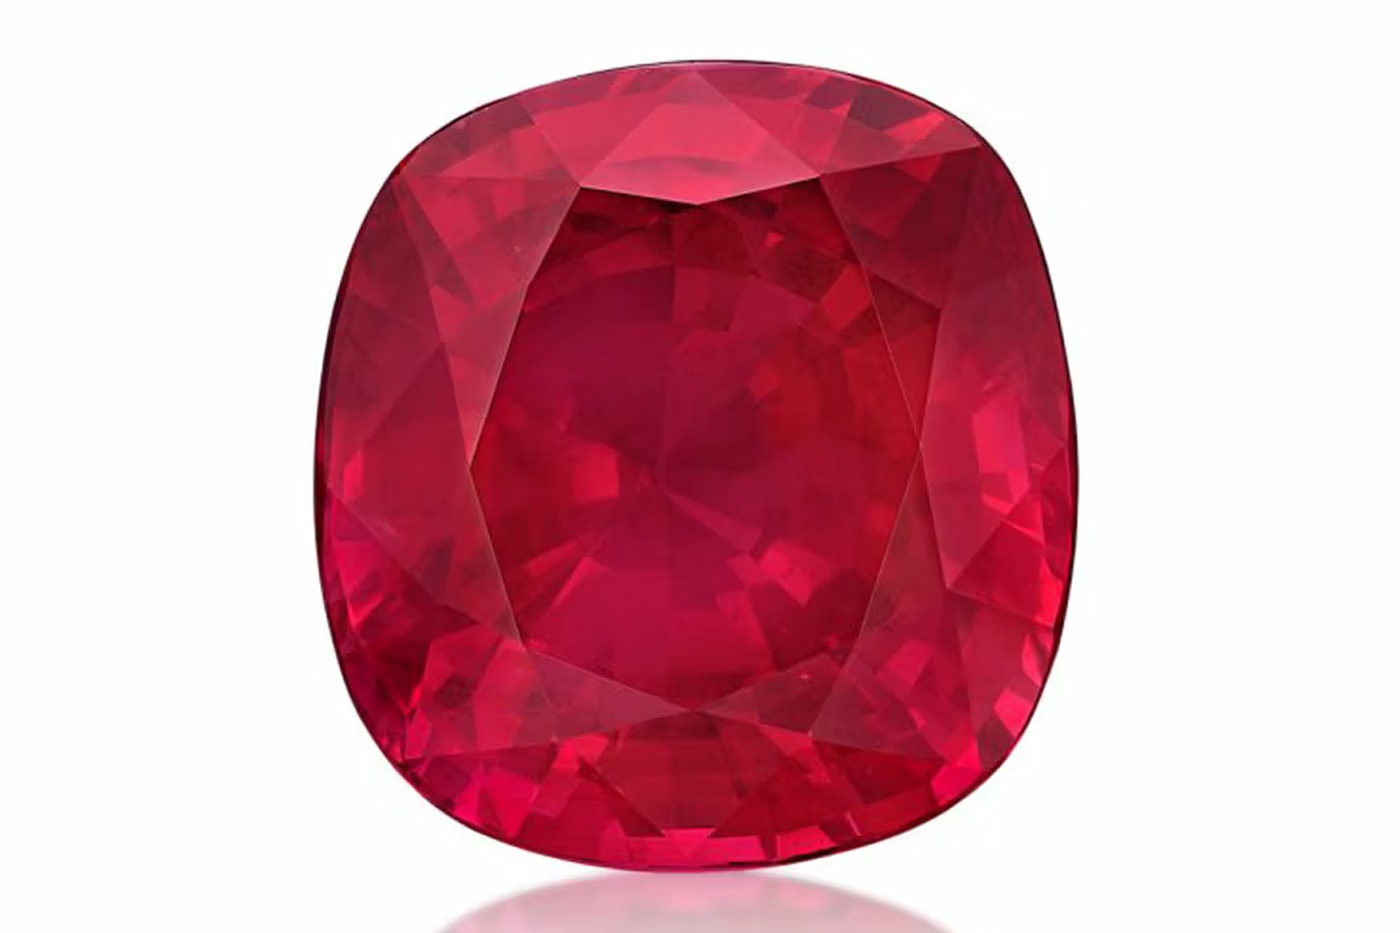 55.22カラットの深紅色のルビーが世界最高額の50億円近くで落札 world's largest ruby breaks record sells for 34.8 million gem stone auction sotheby's